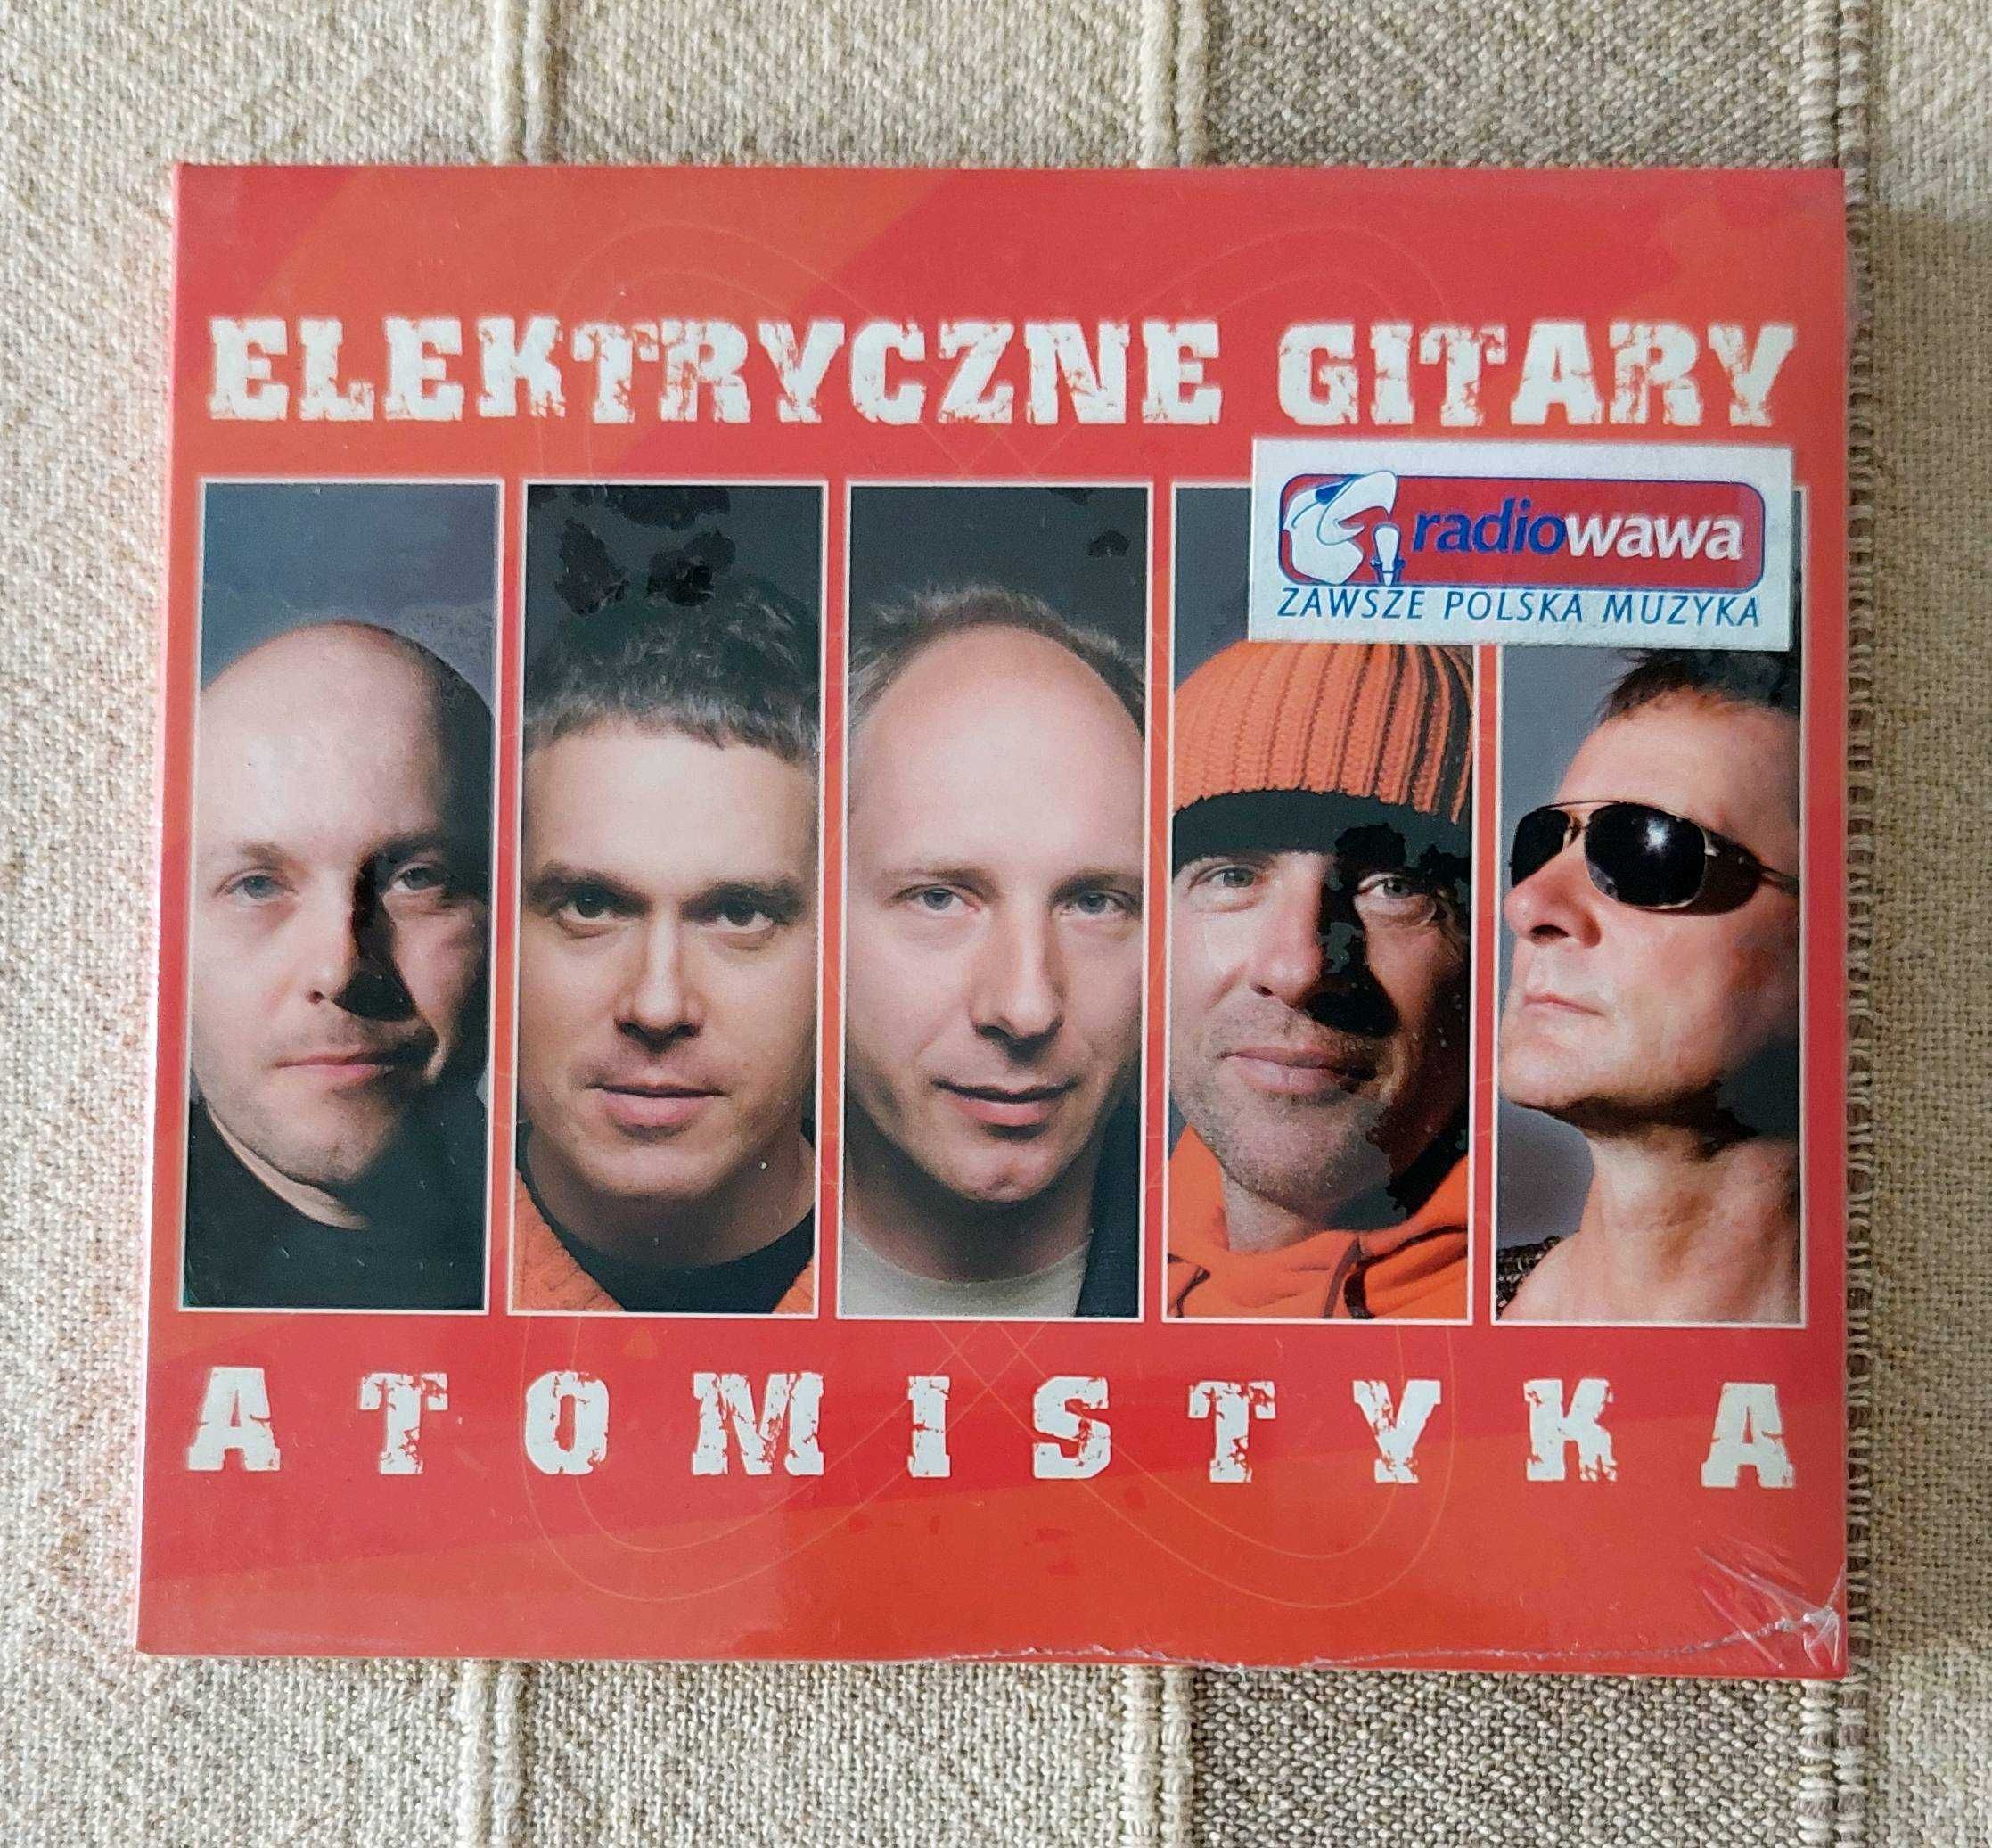 Zafoliowana płyta CD "Atomistyka" Elektryczne Gitary, 2006